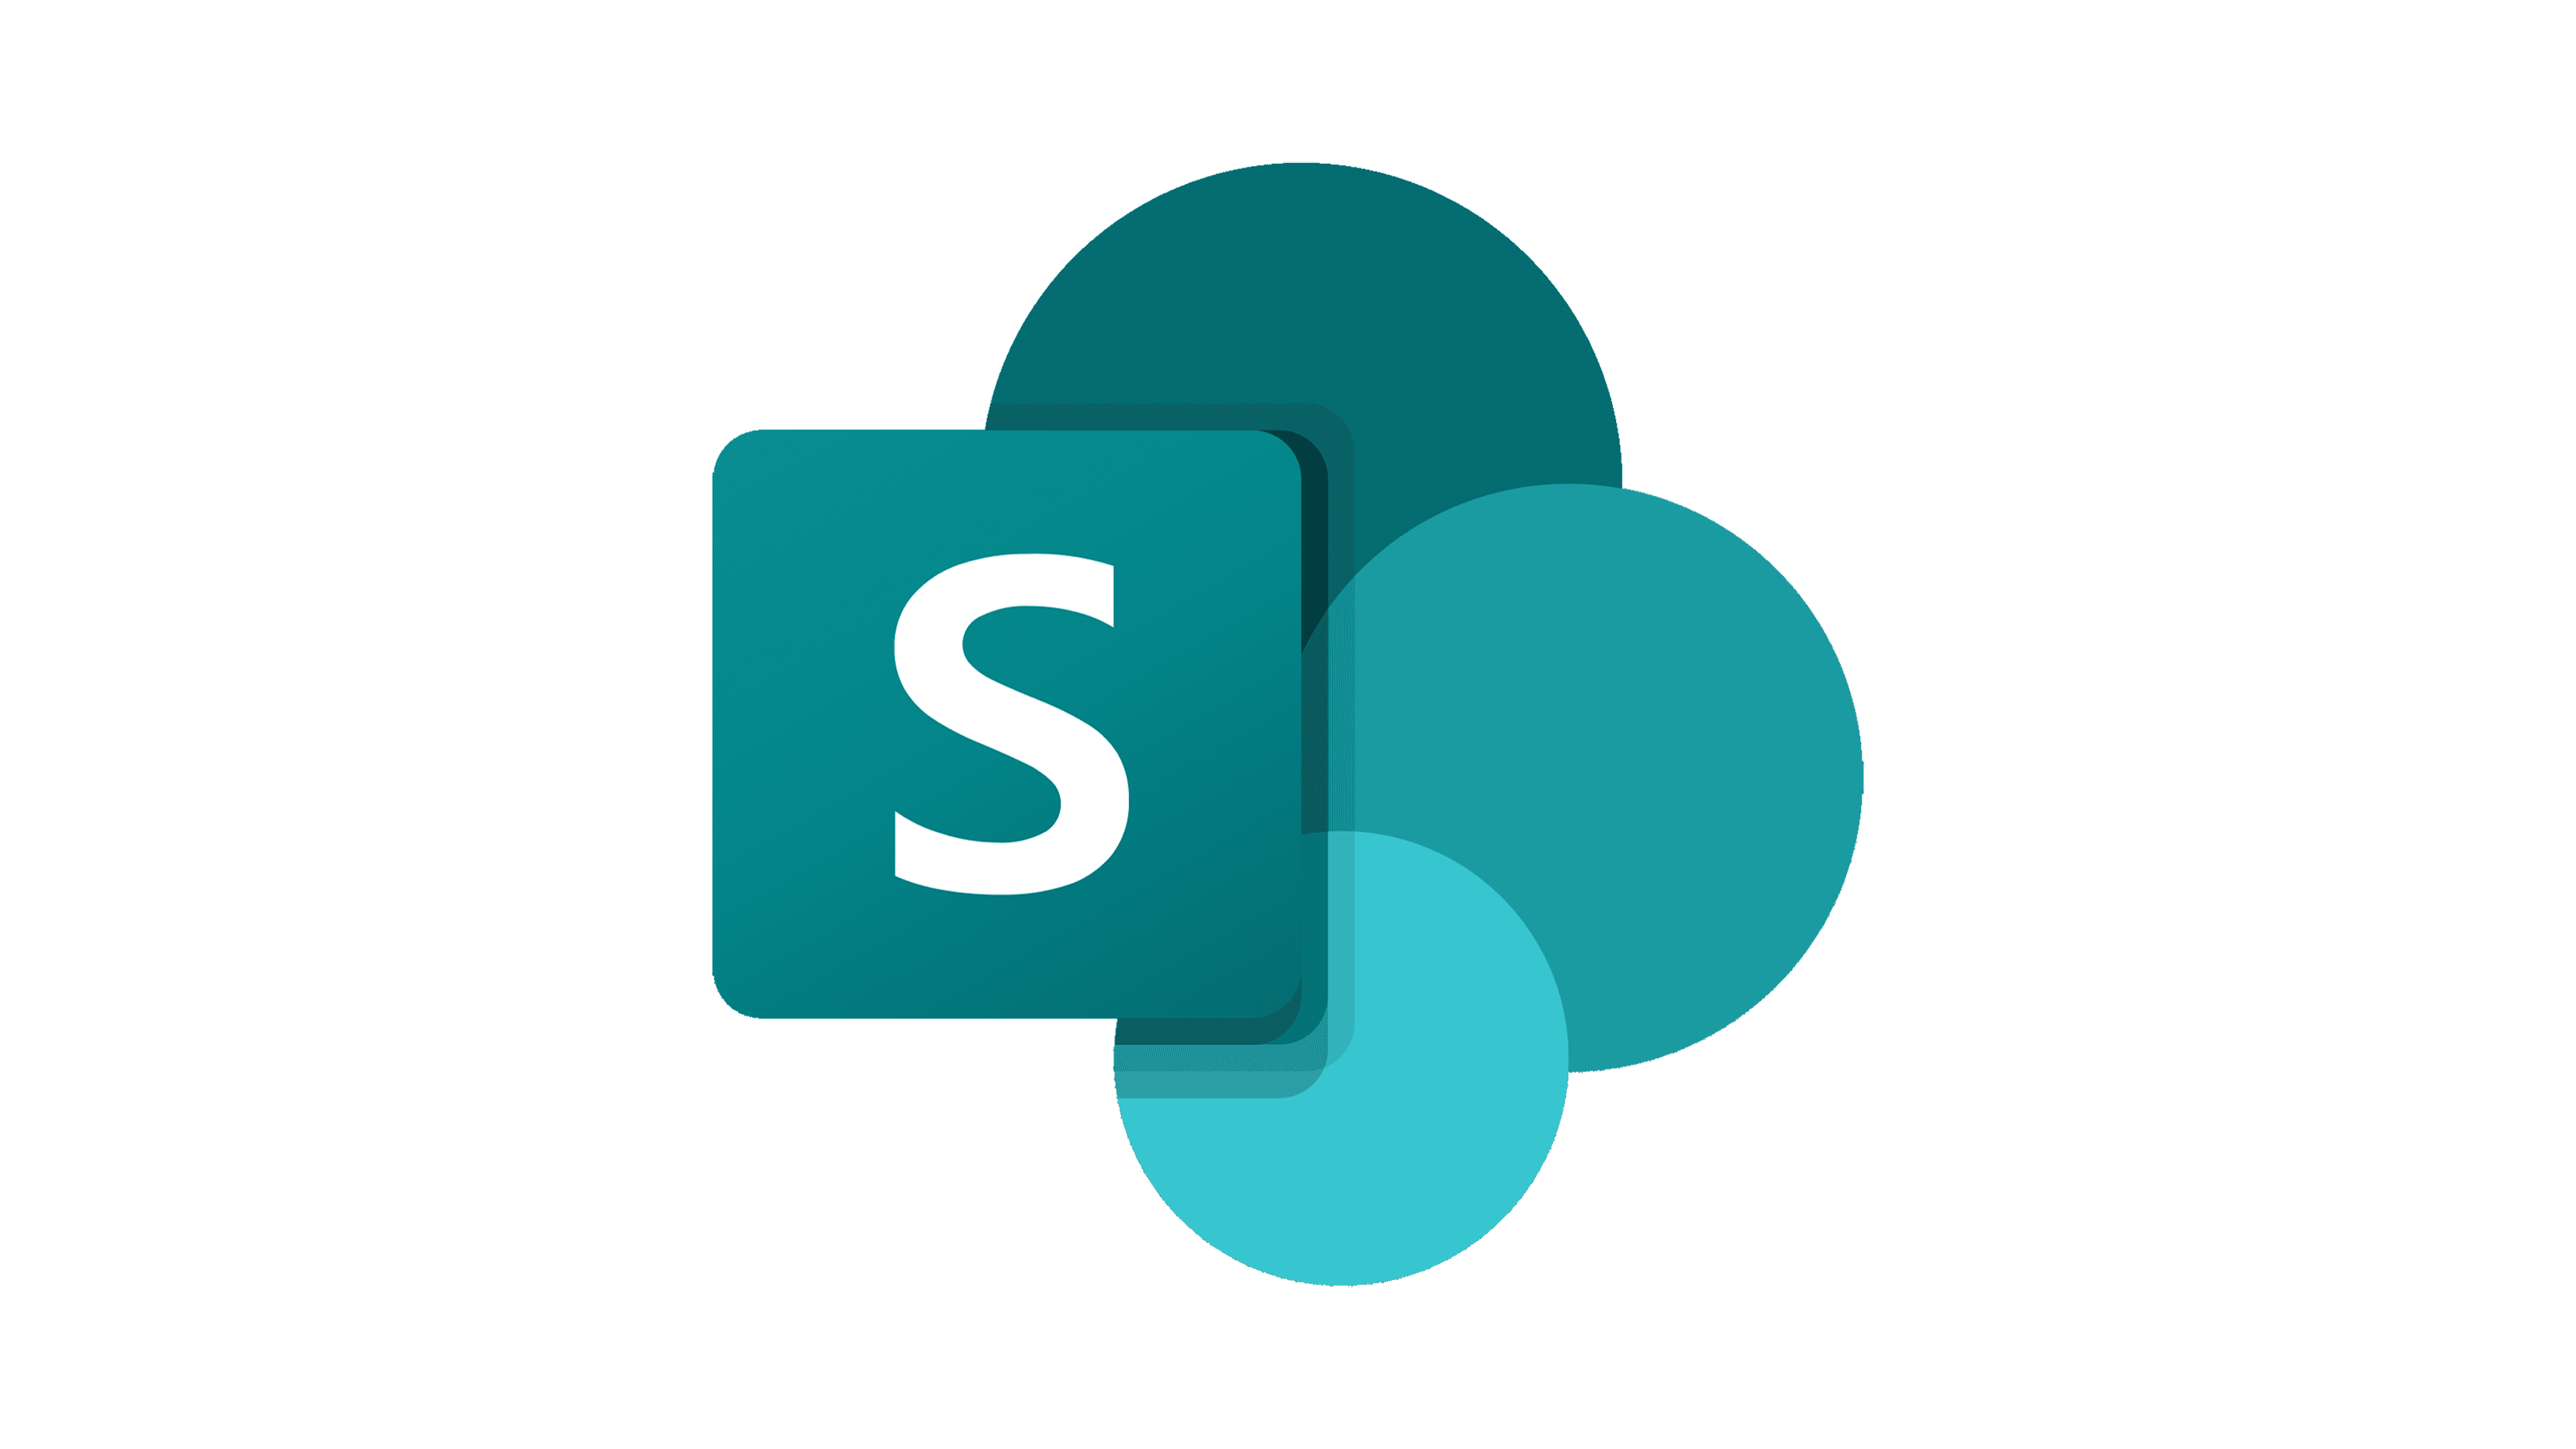 Microsoft SharePoint er en filopbevarings- og samarbejdsplatform i Microsoft 365